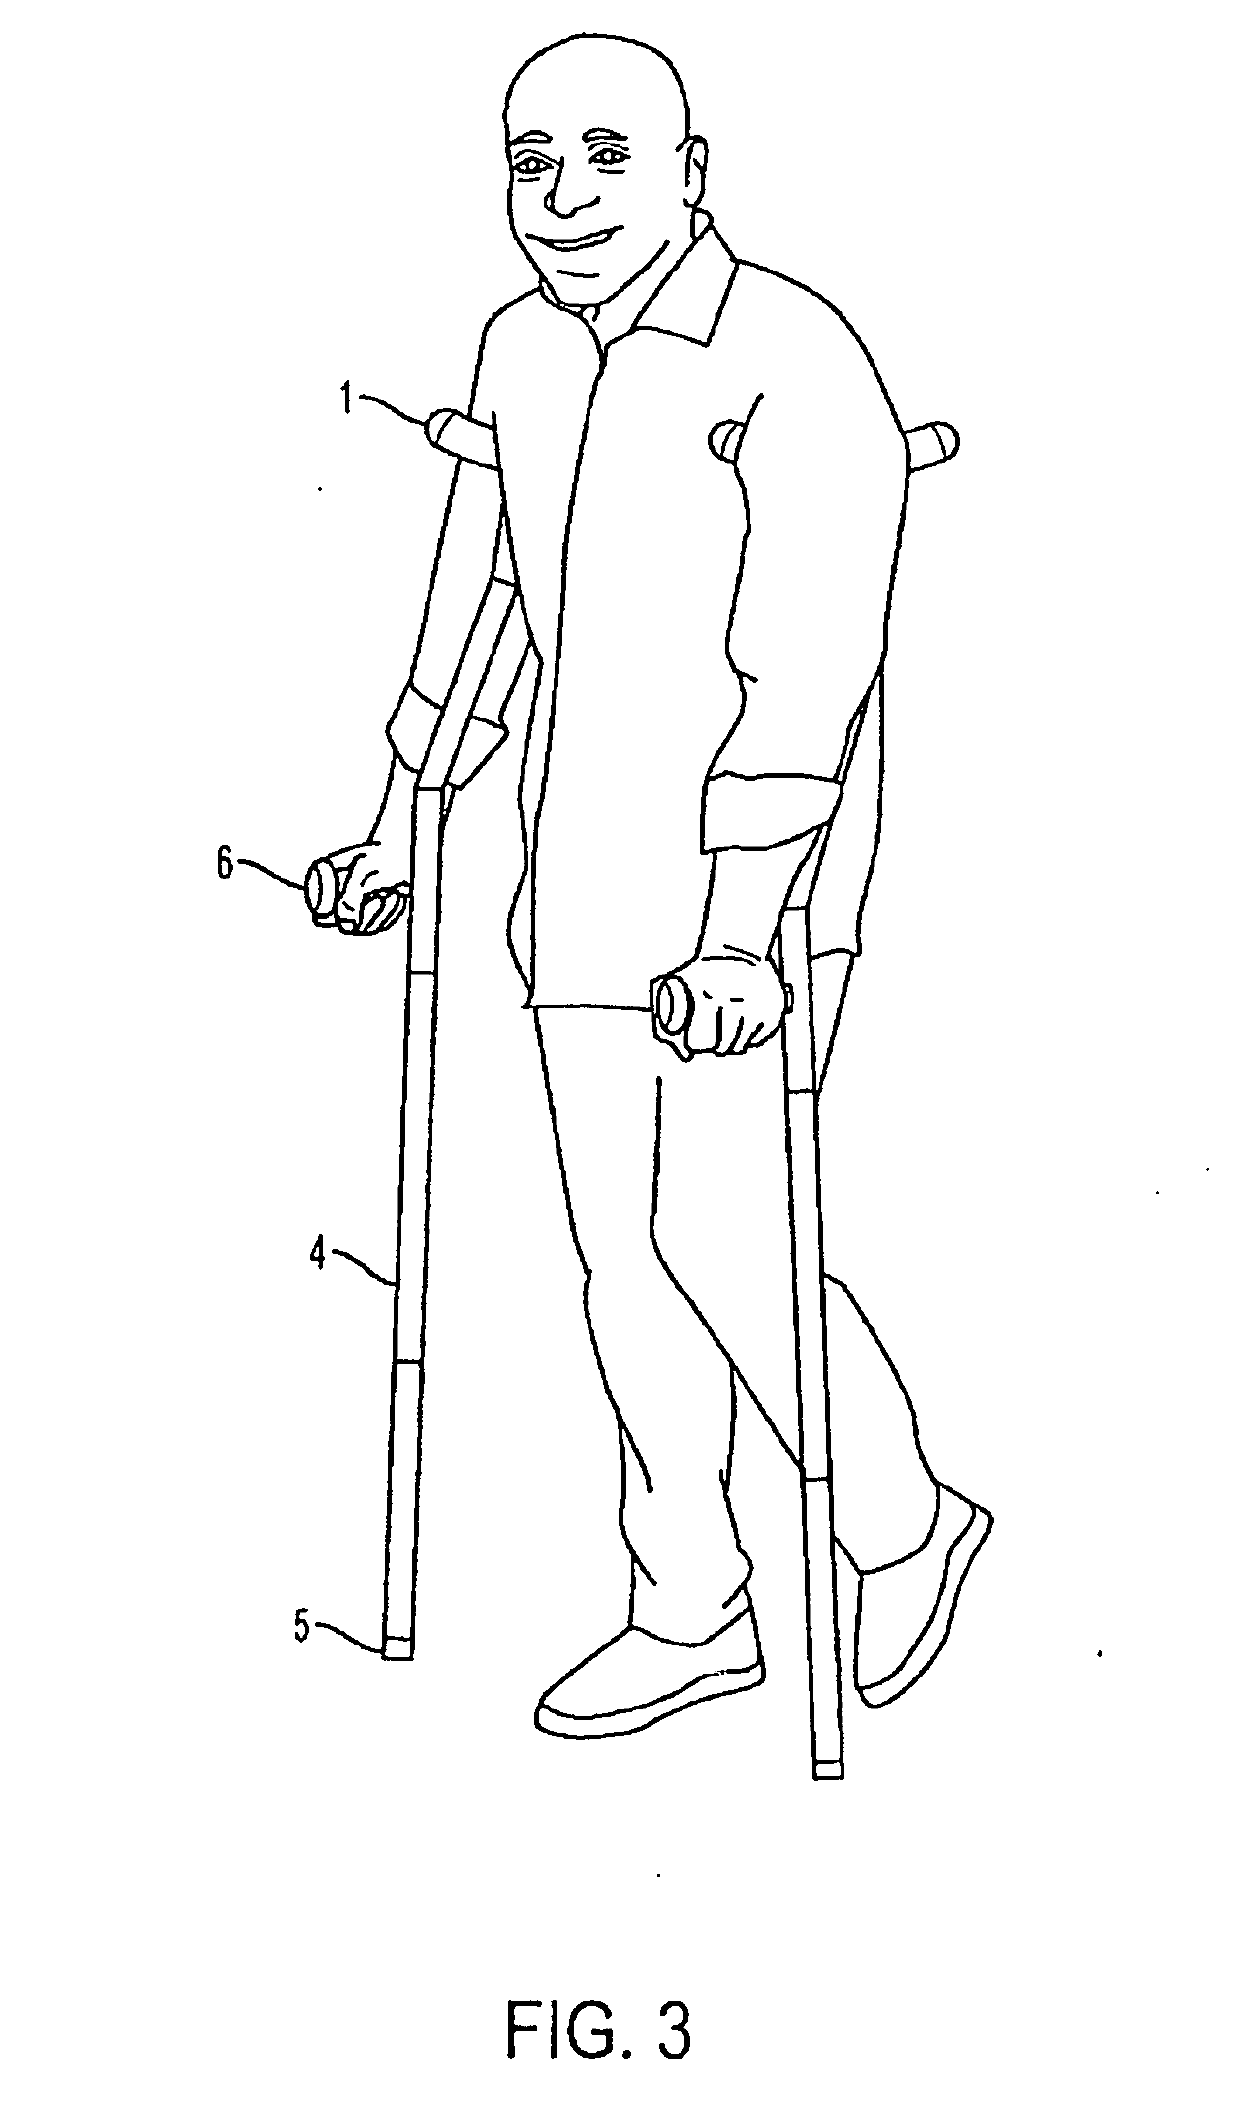 Ergonomic crutch